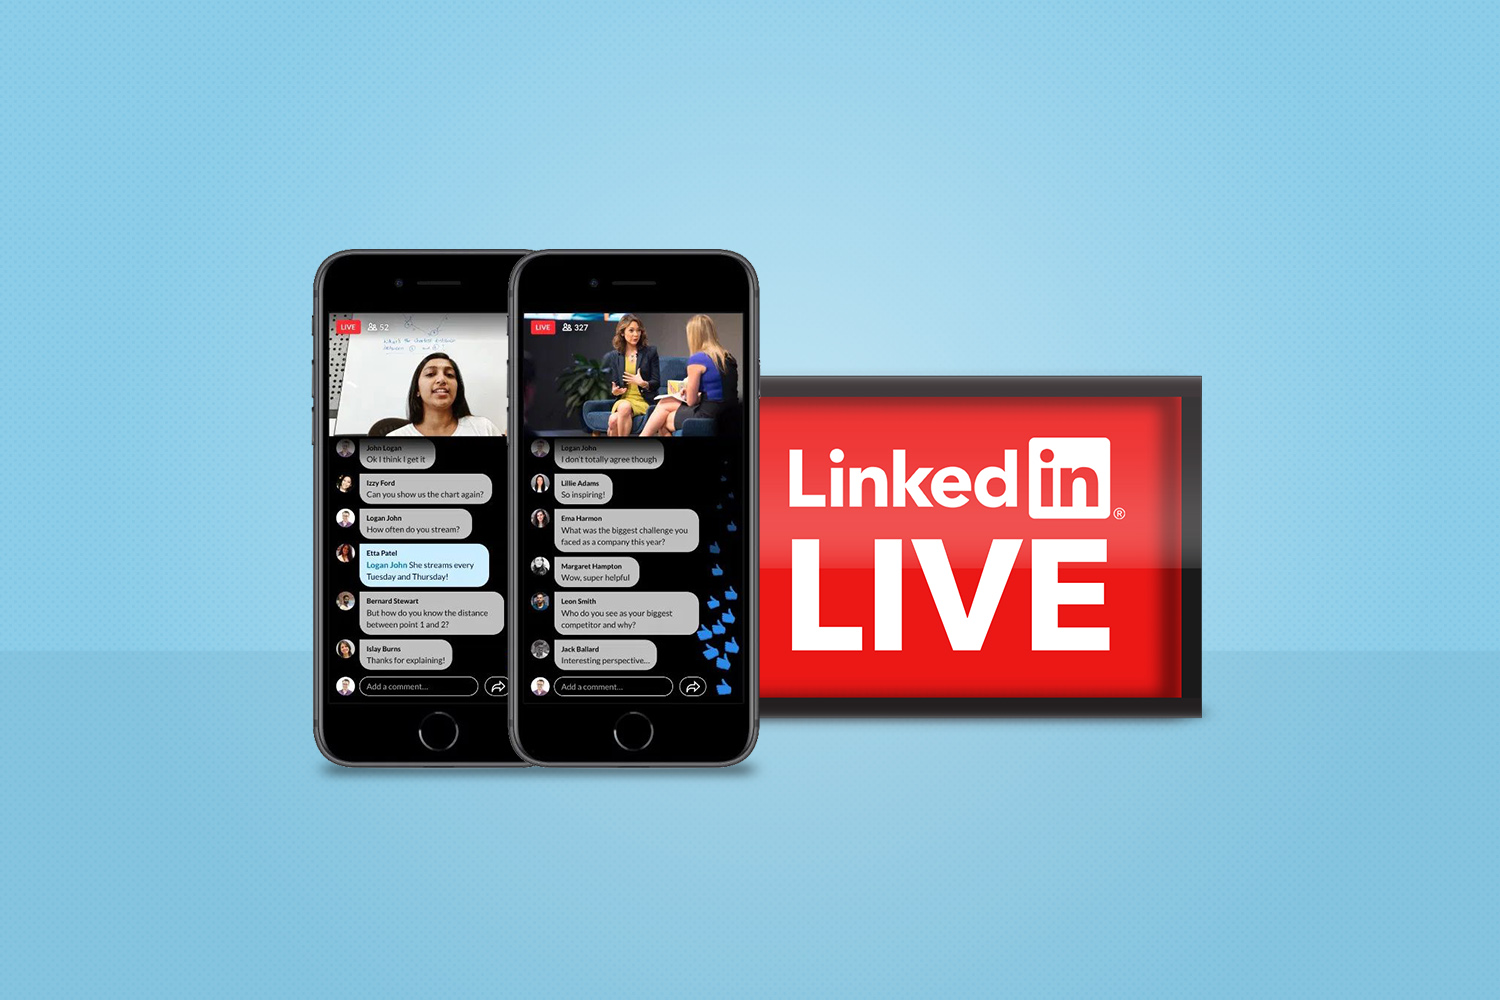 linkedin live launch